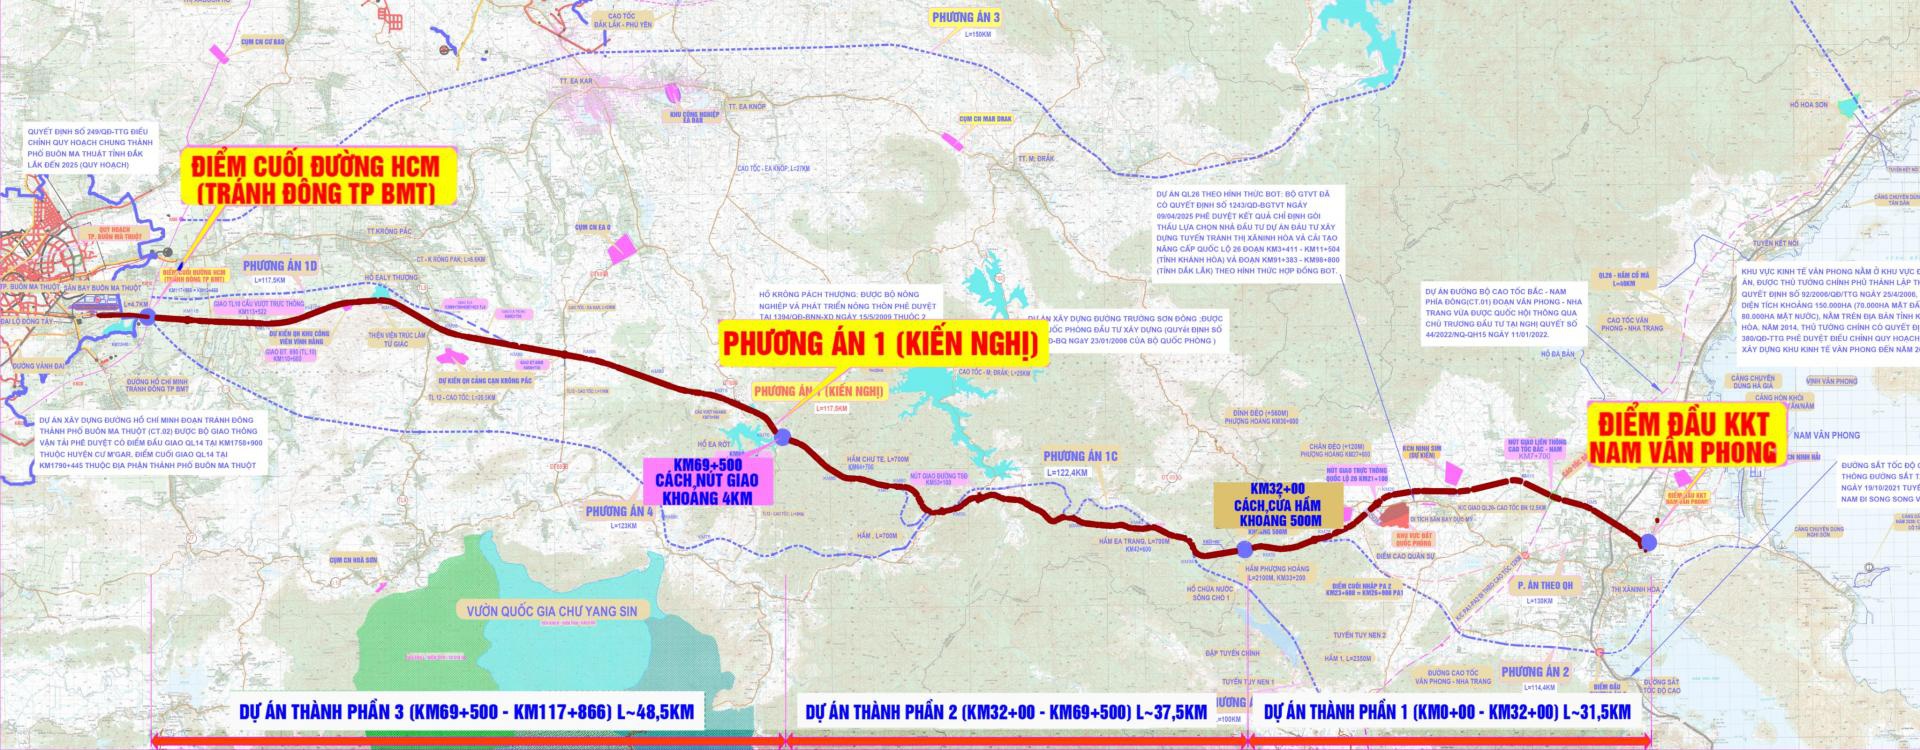 Bản đồ hướng tuyến đường bộ cao tốc Khánh Hòa - Buôn Ma Thuột